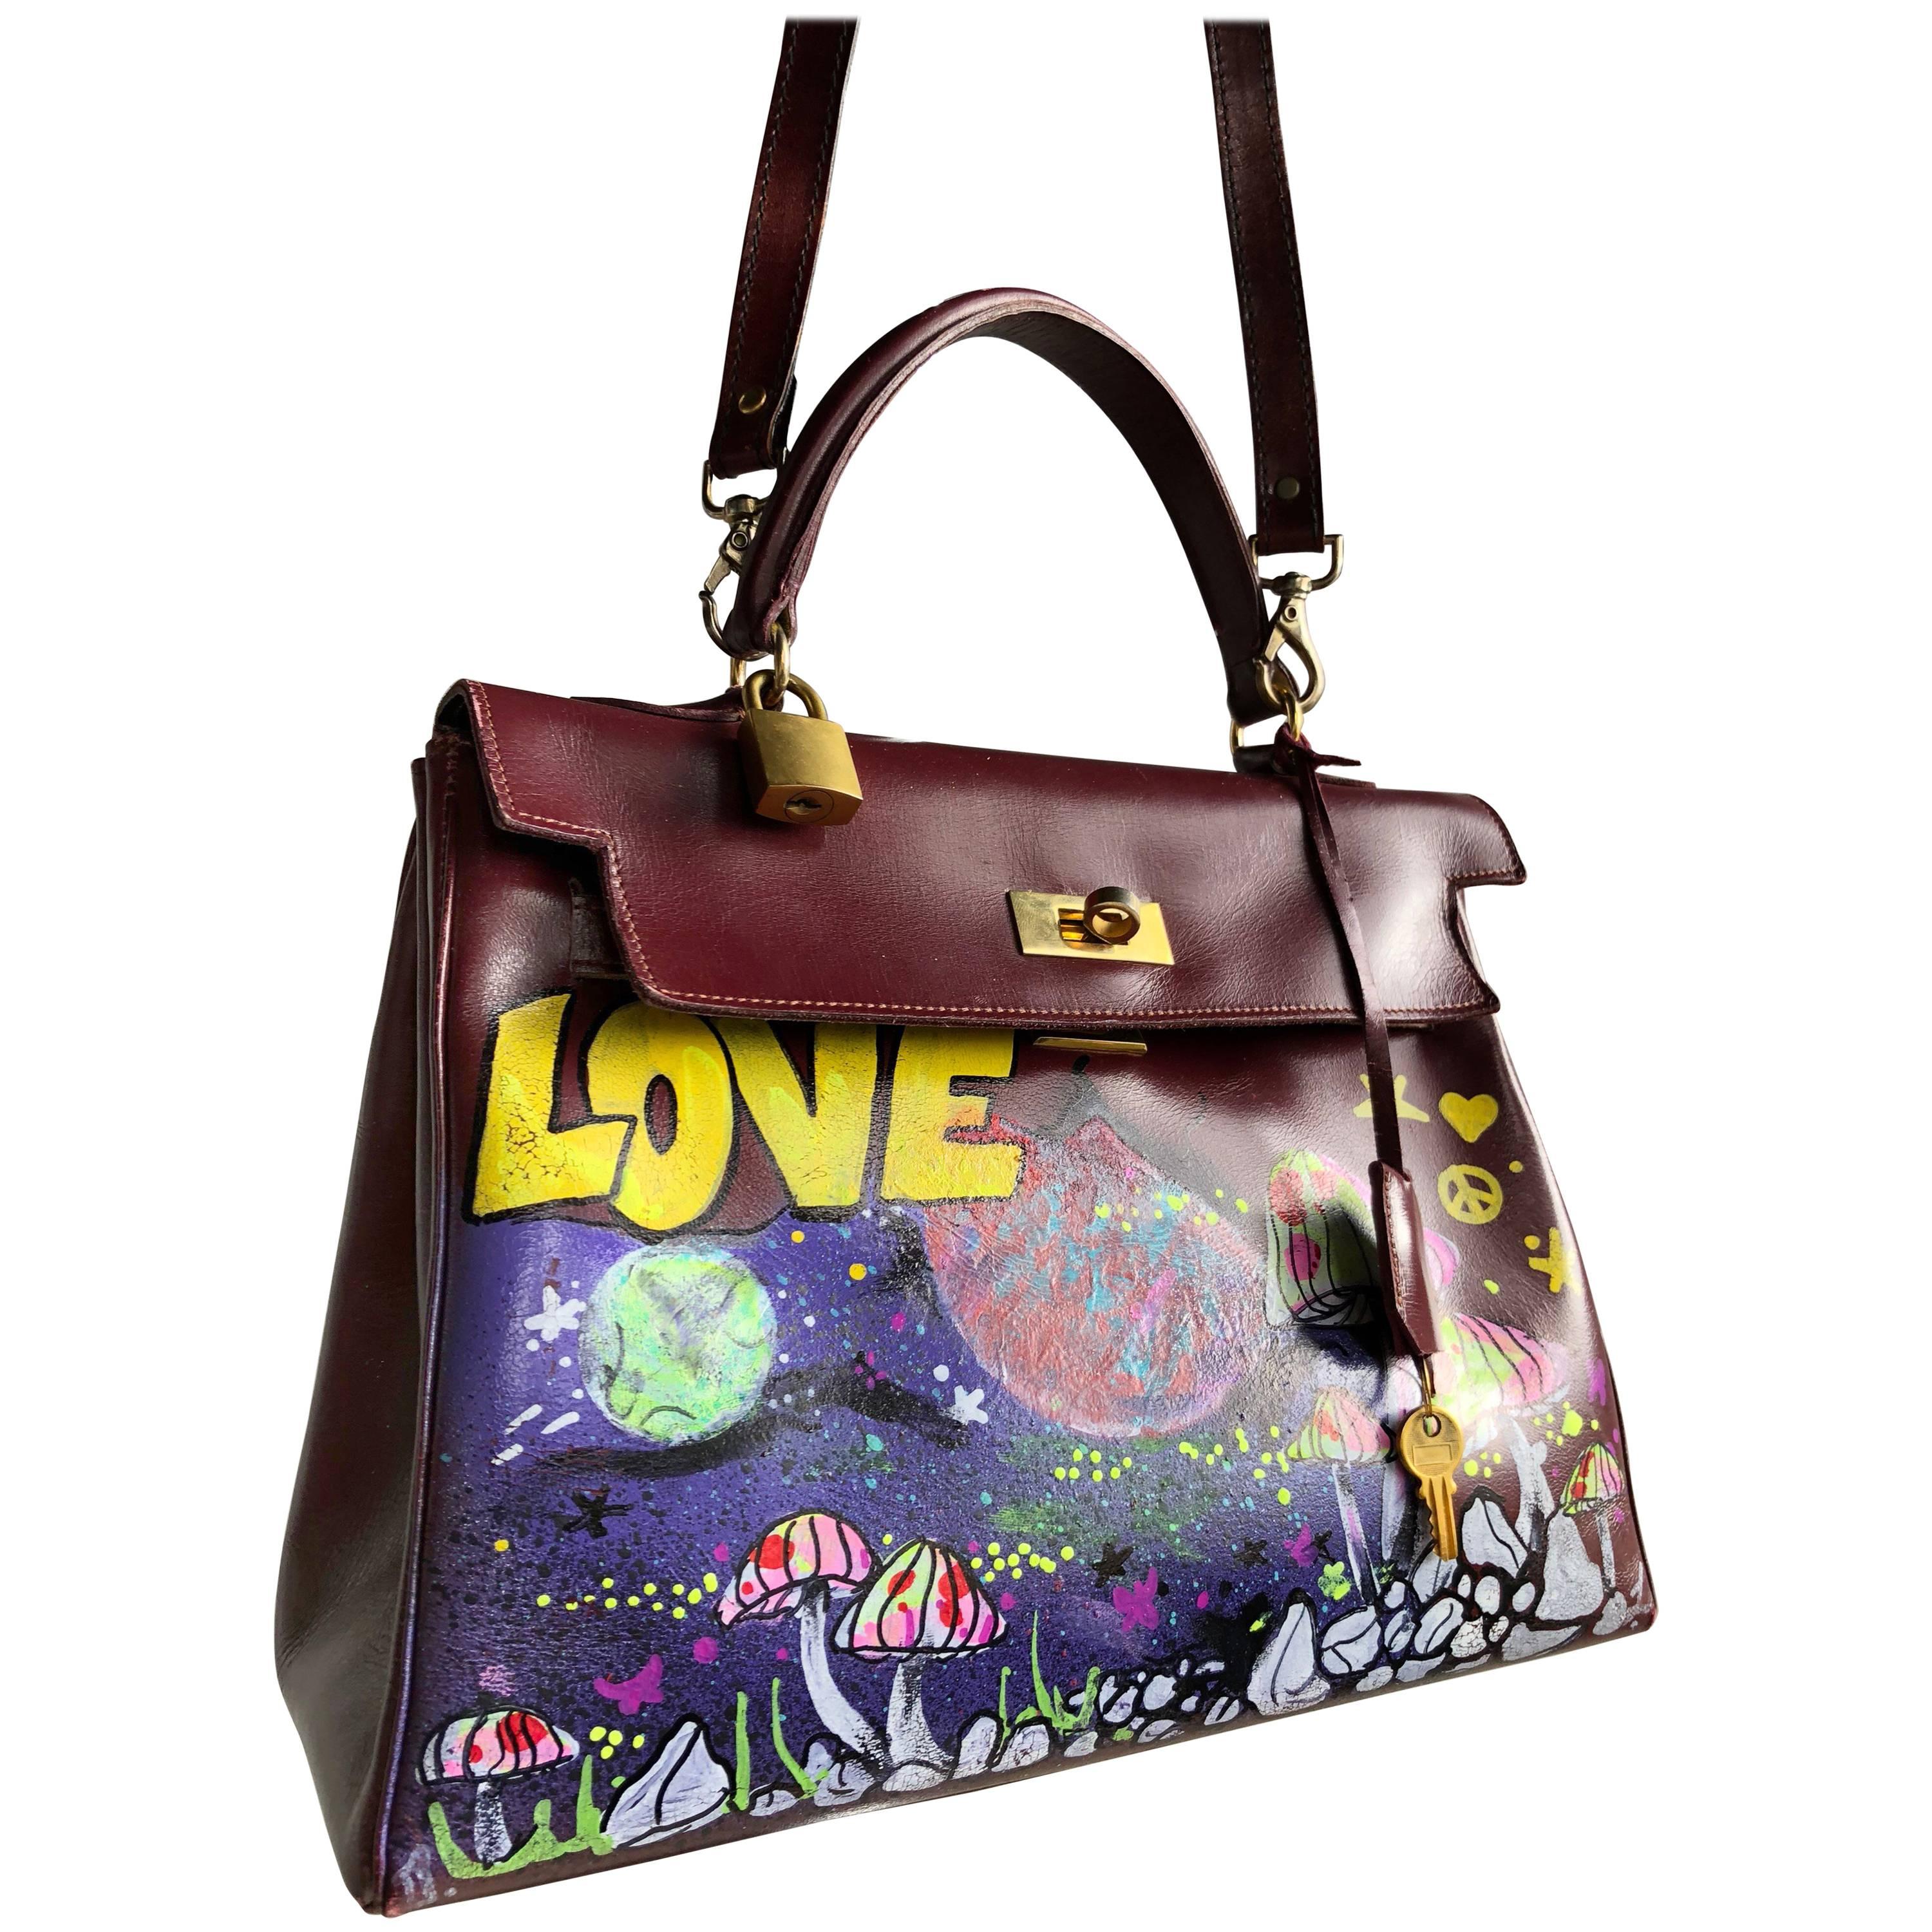 Merlot Leather Bag With Custom LOVE Graffiti Art, 1950s For Sale